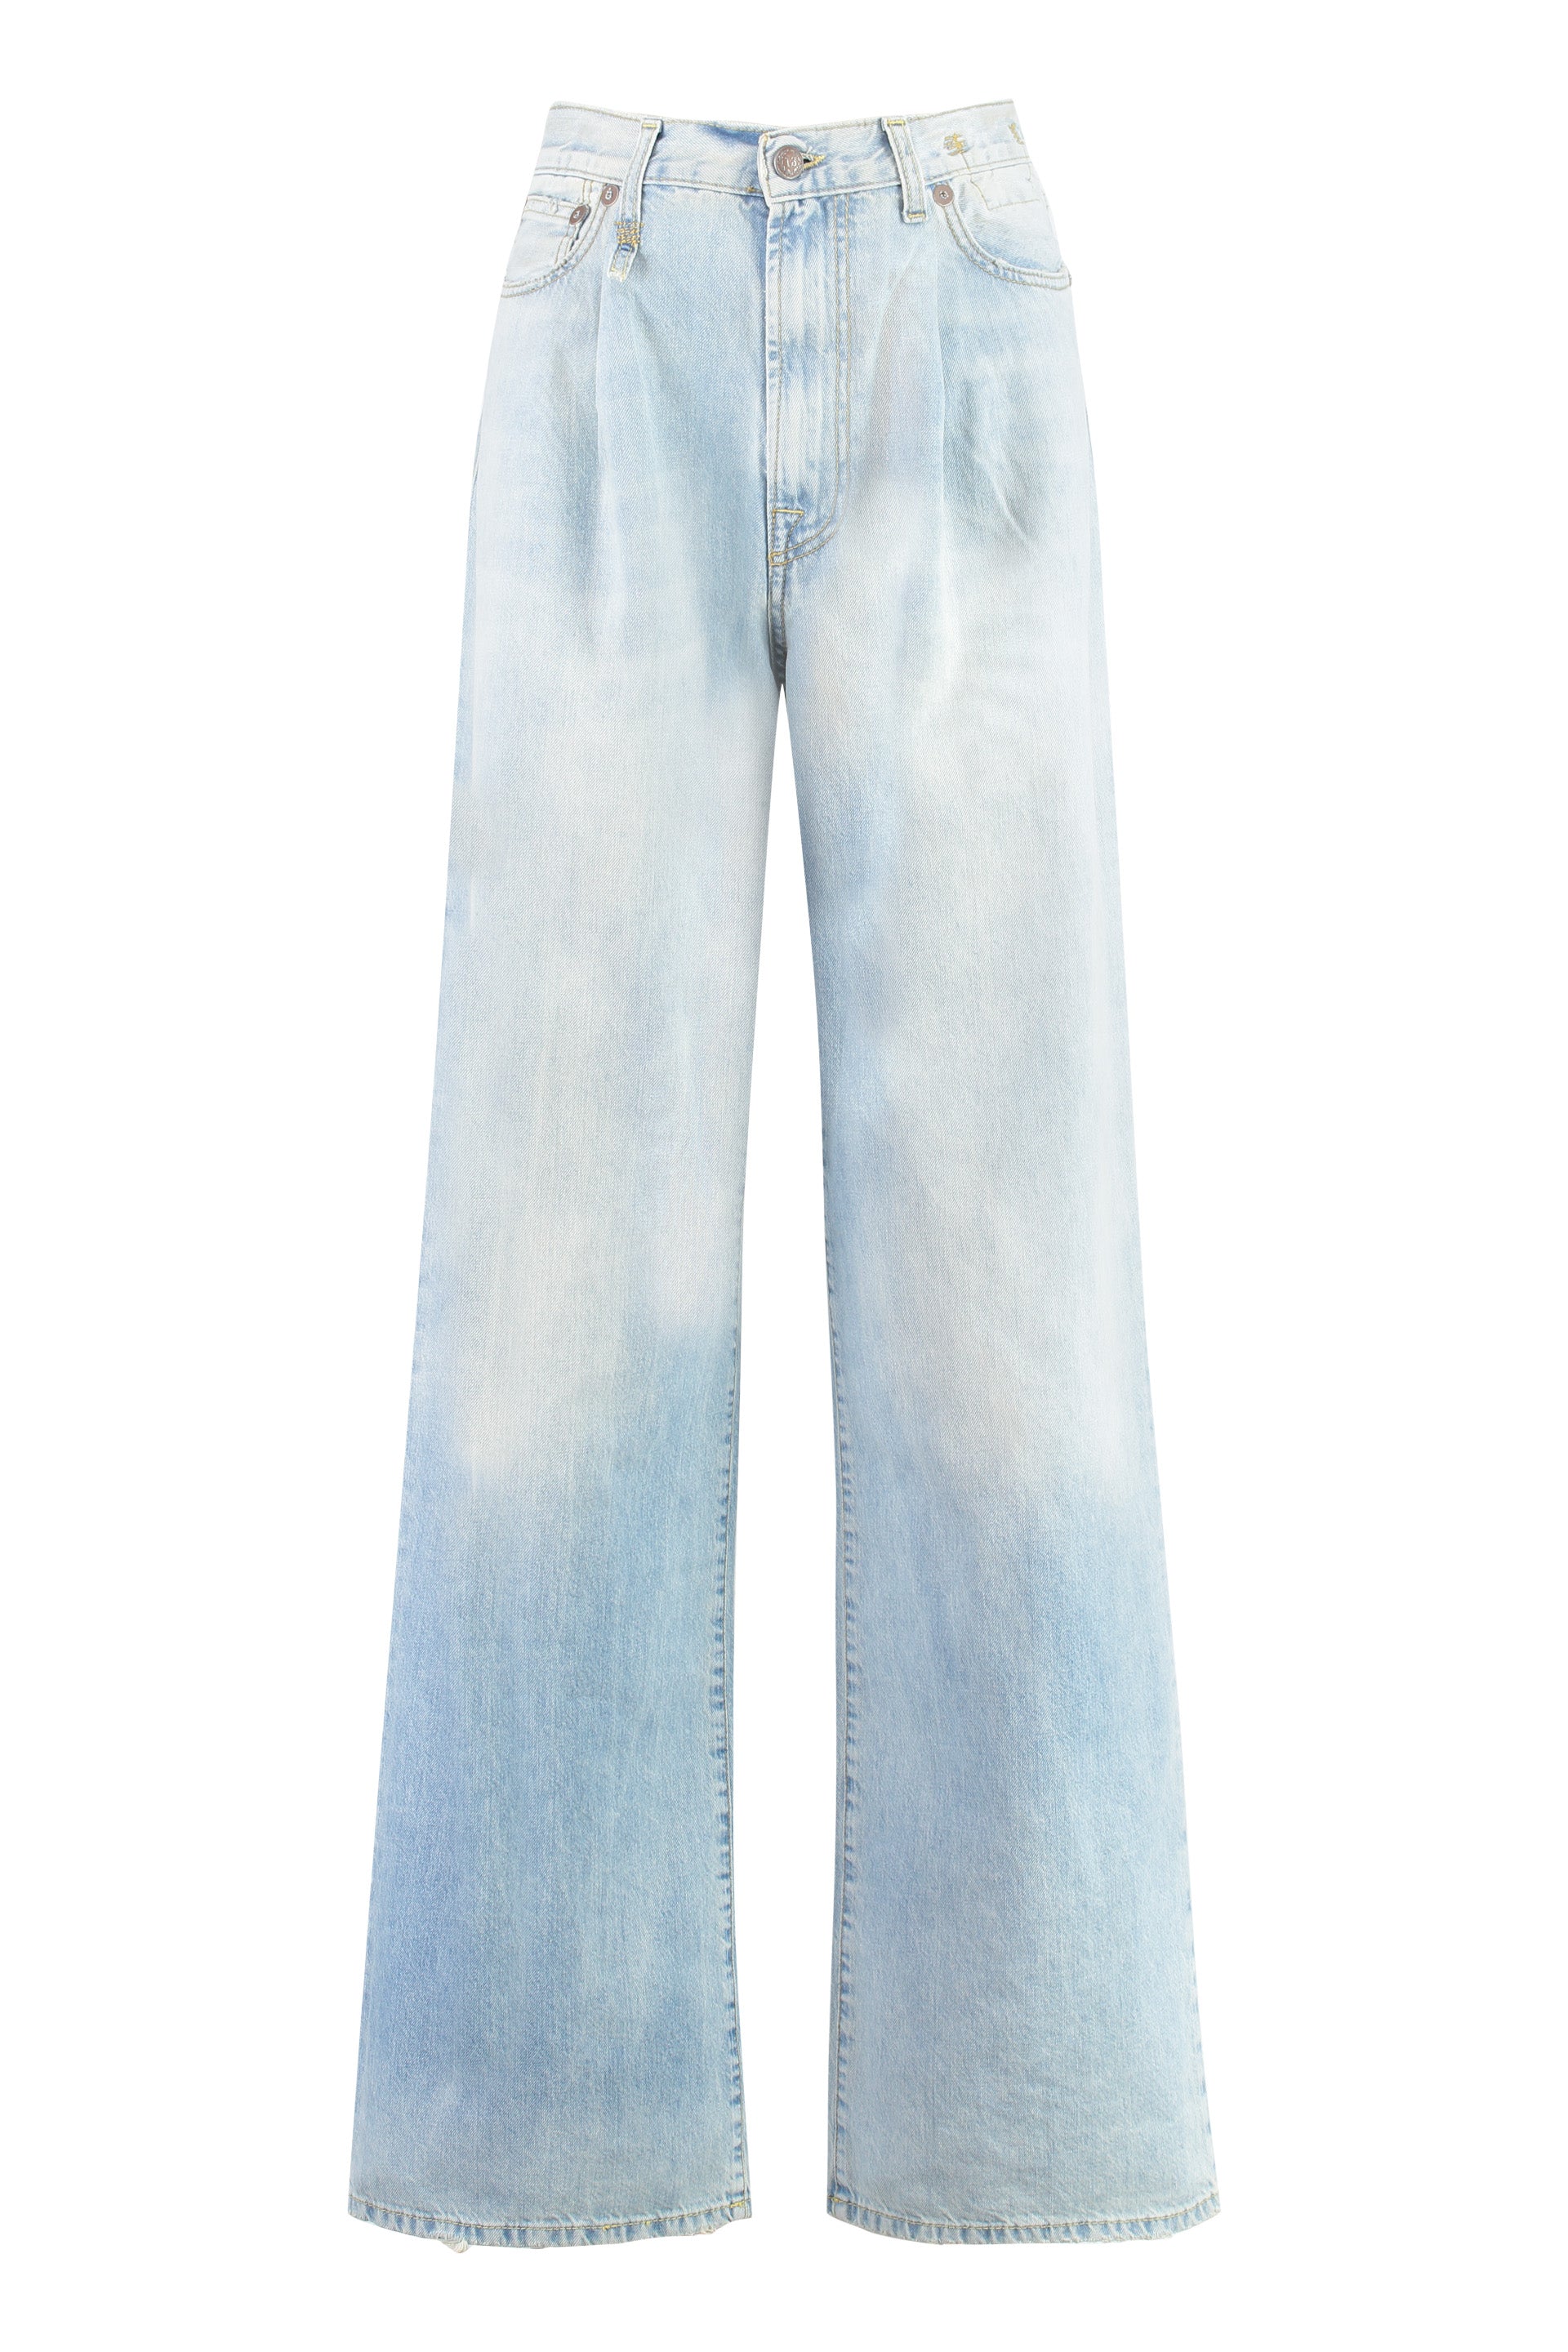 R13 Copper Metal Wide-leg Jeans For Women In Denim